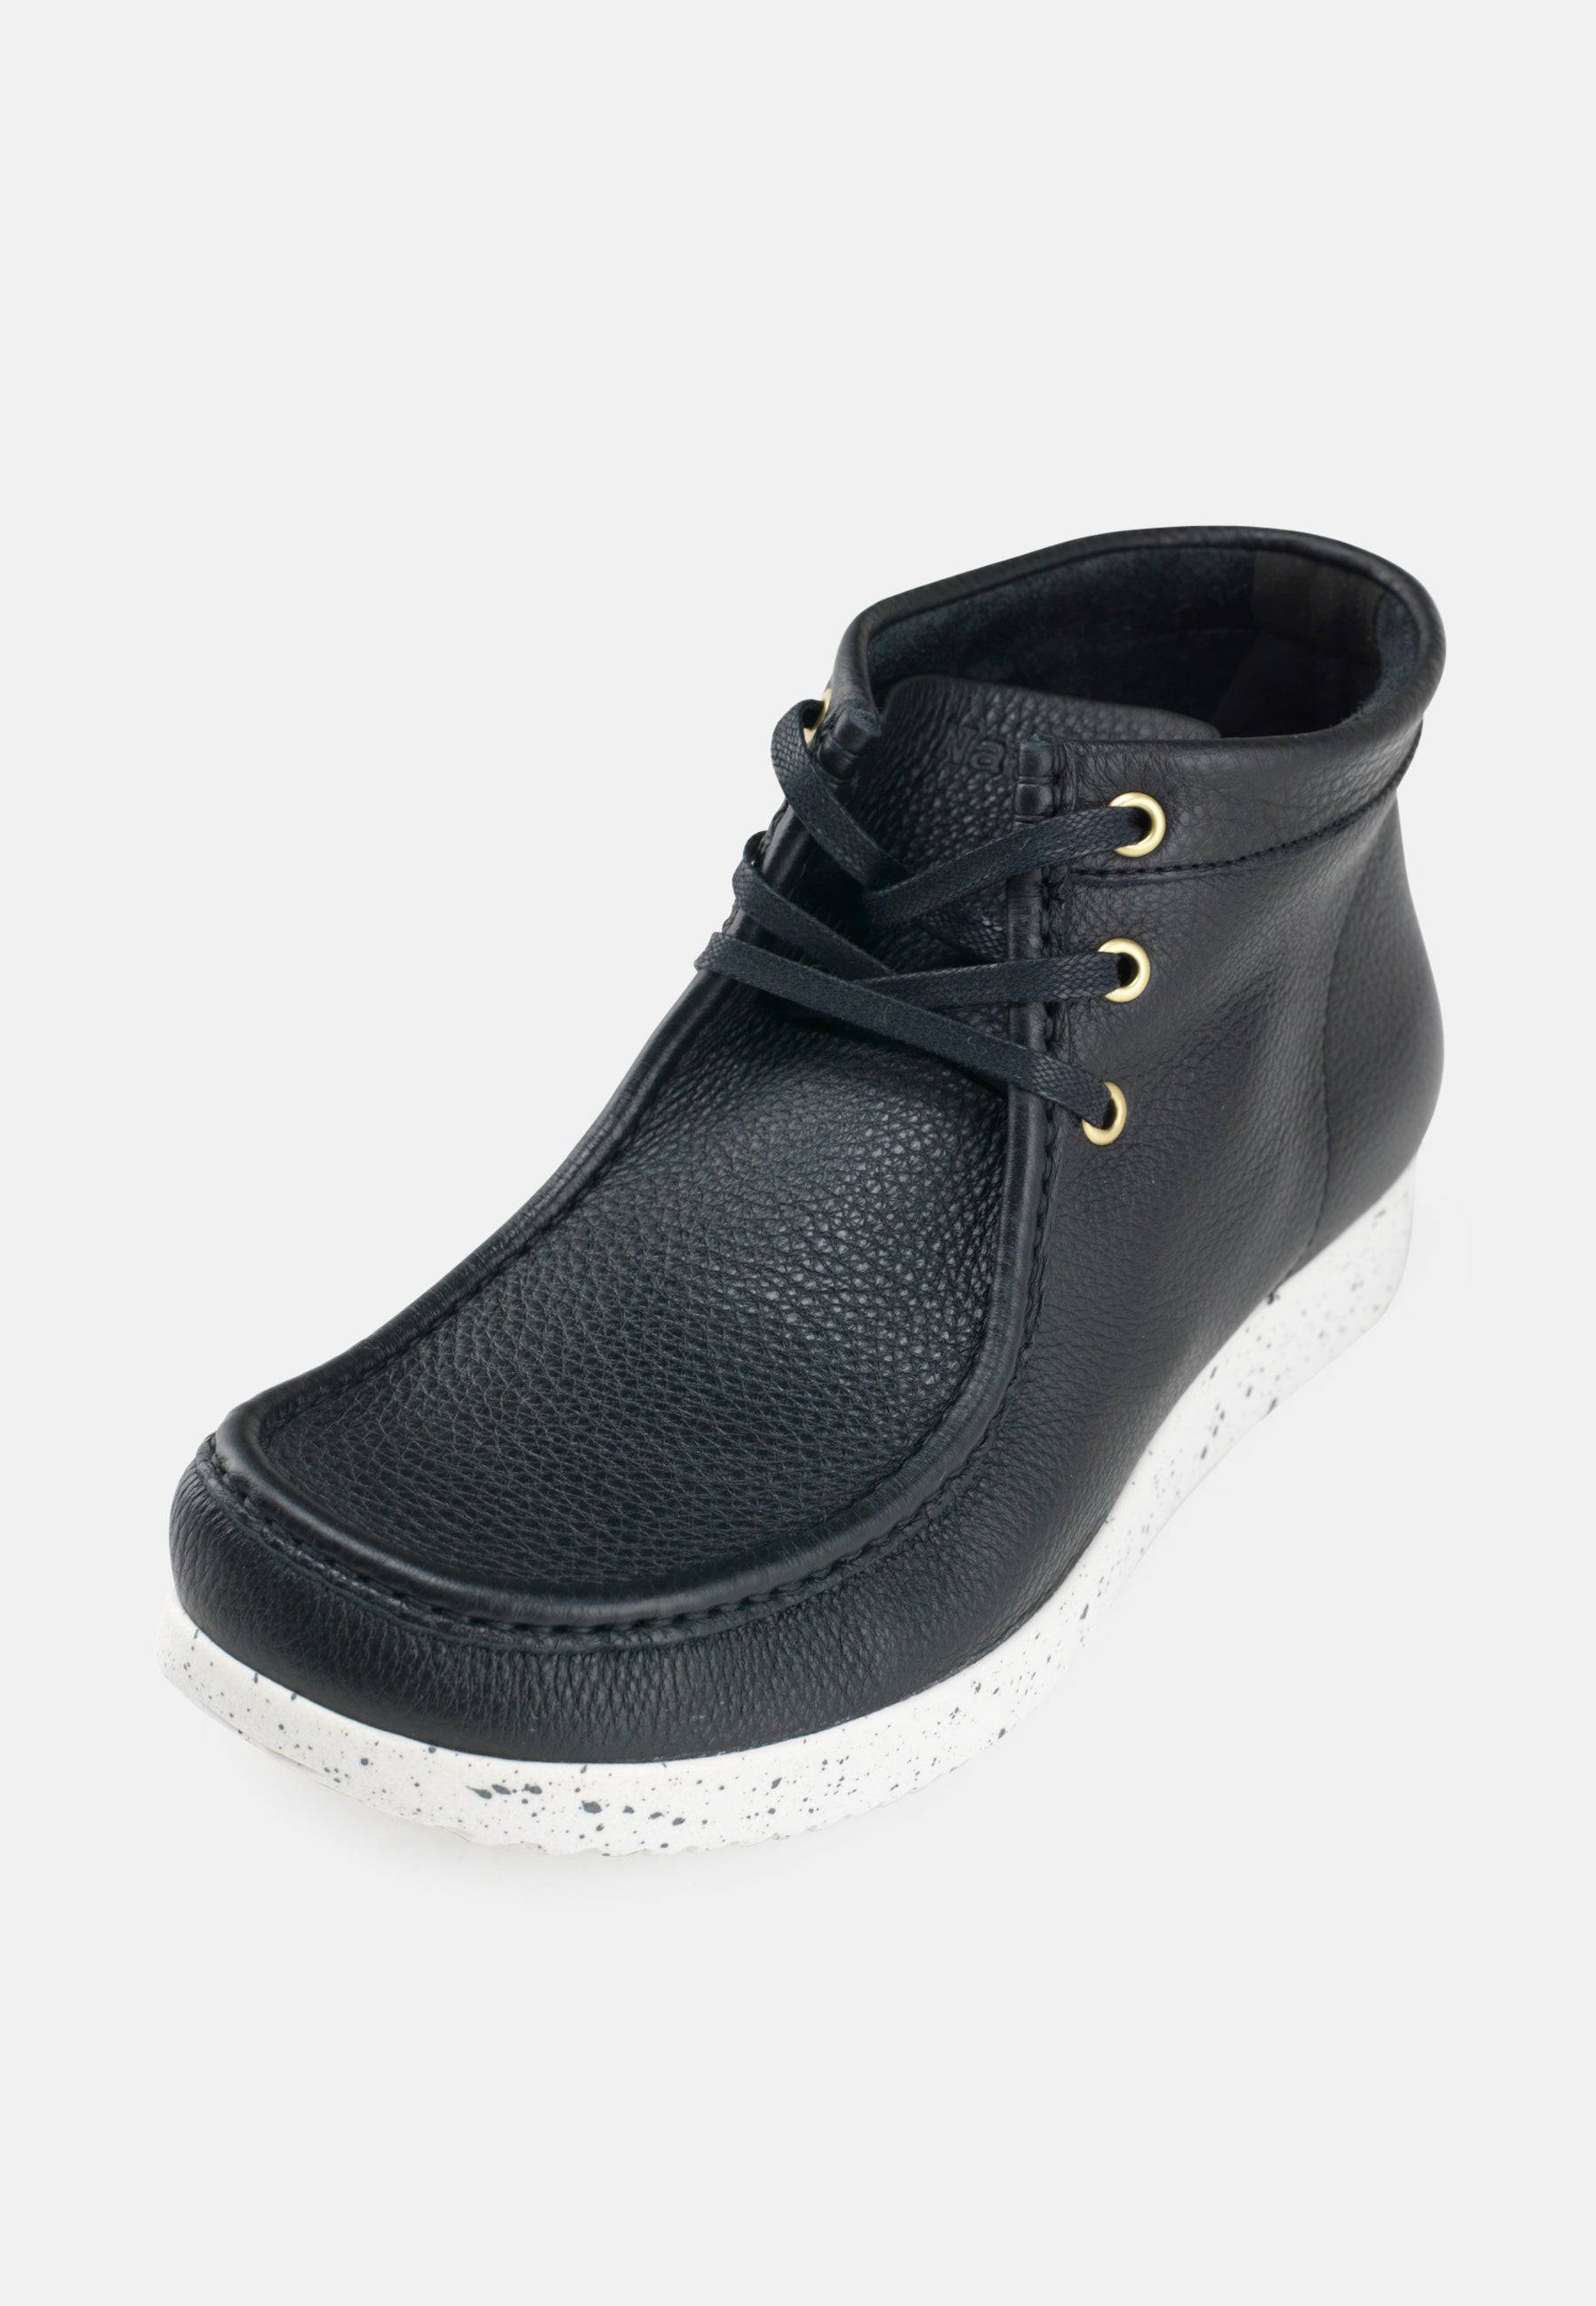 Anton Boot Leather - Black